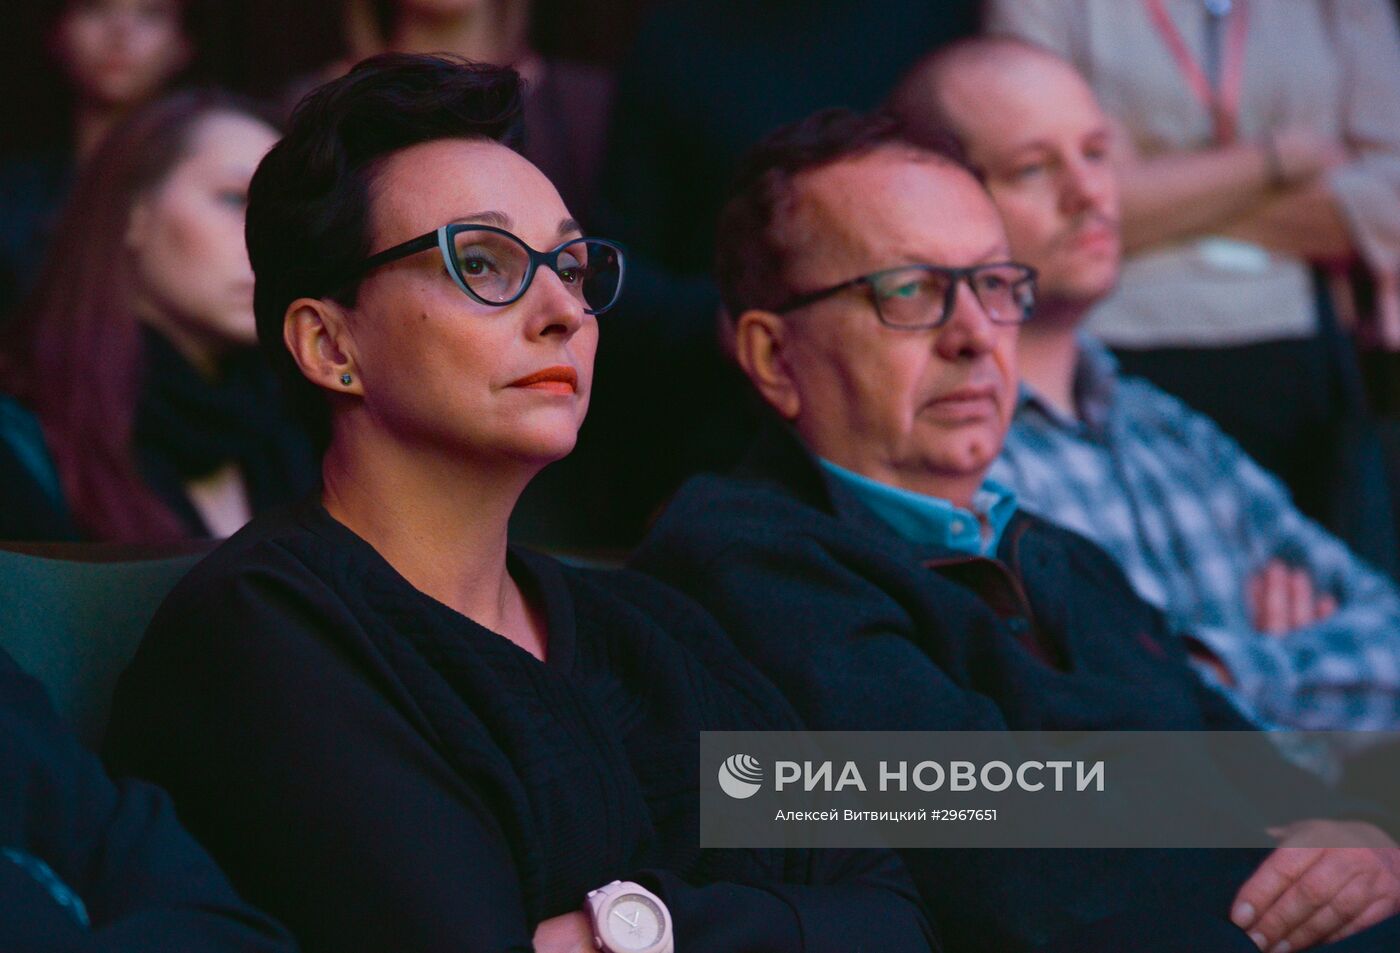 Фестиваль российских фильмов "Спутник над Польшей"